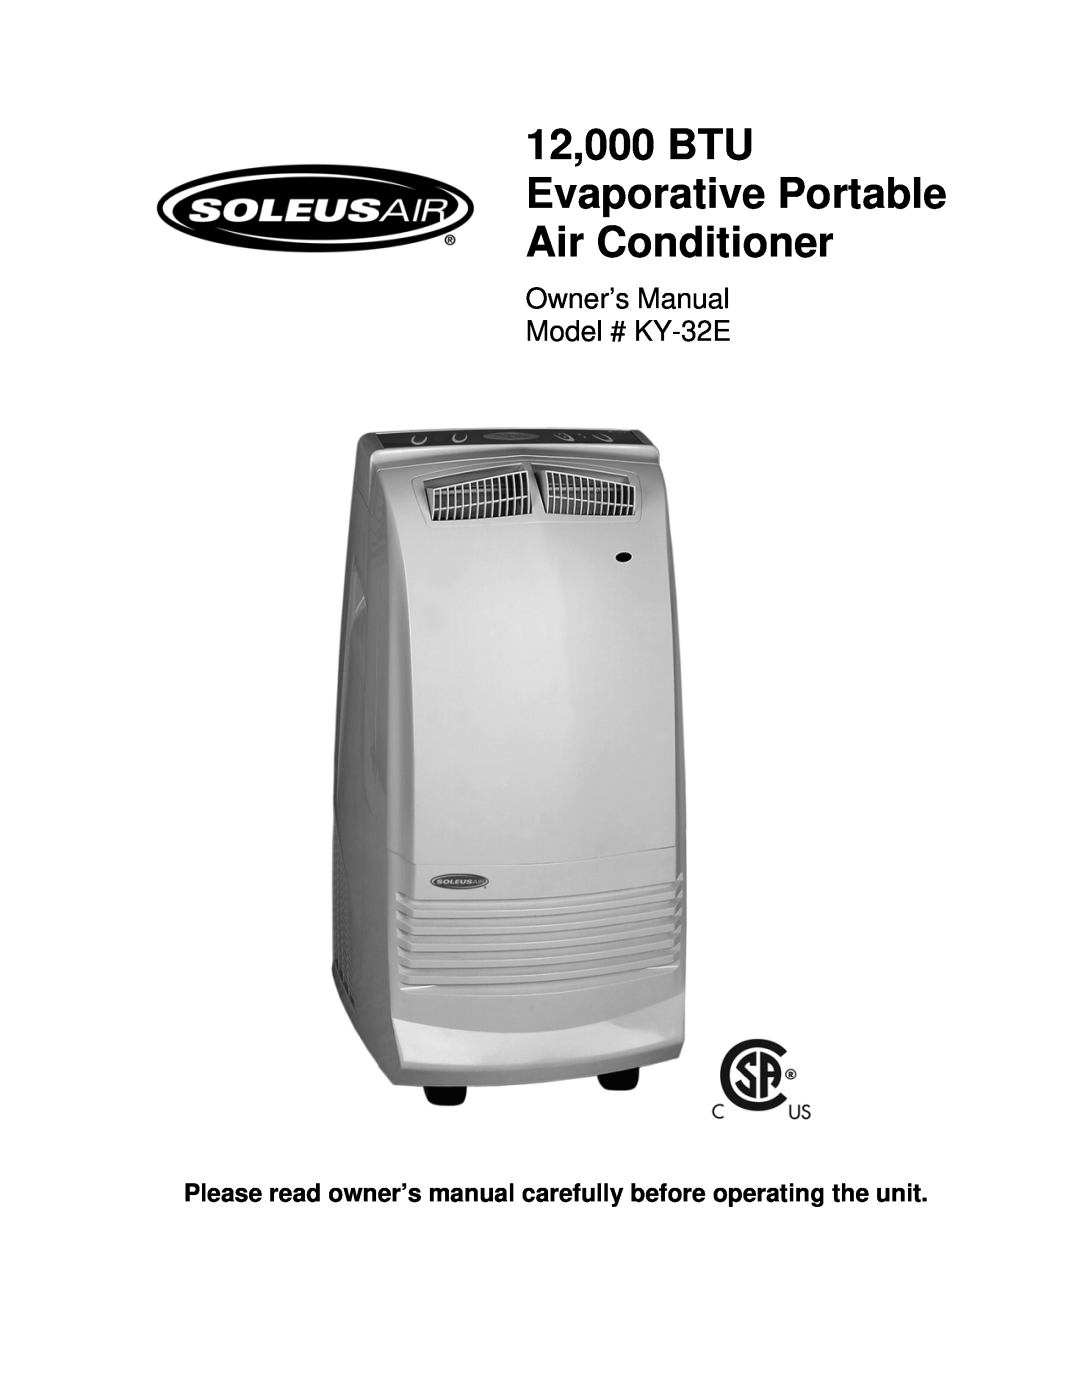 Soleus Air KY-32E owner manual 12,000 BTU Evaporative Portable Air Conditioner 